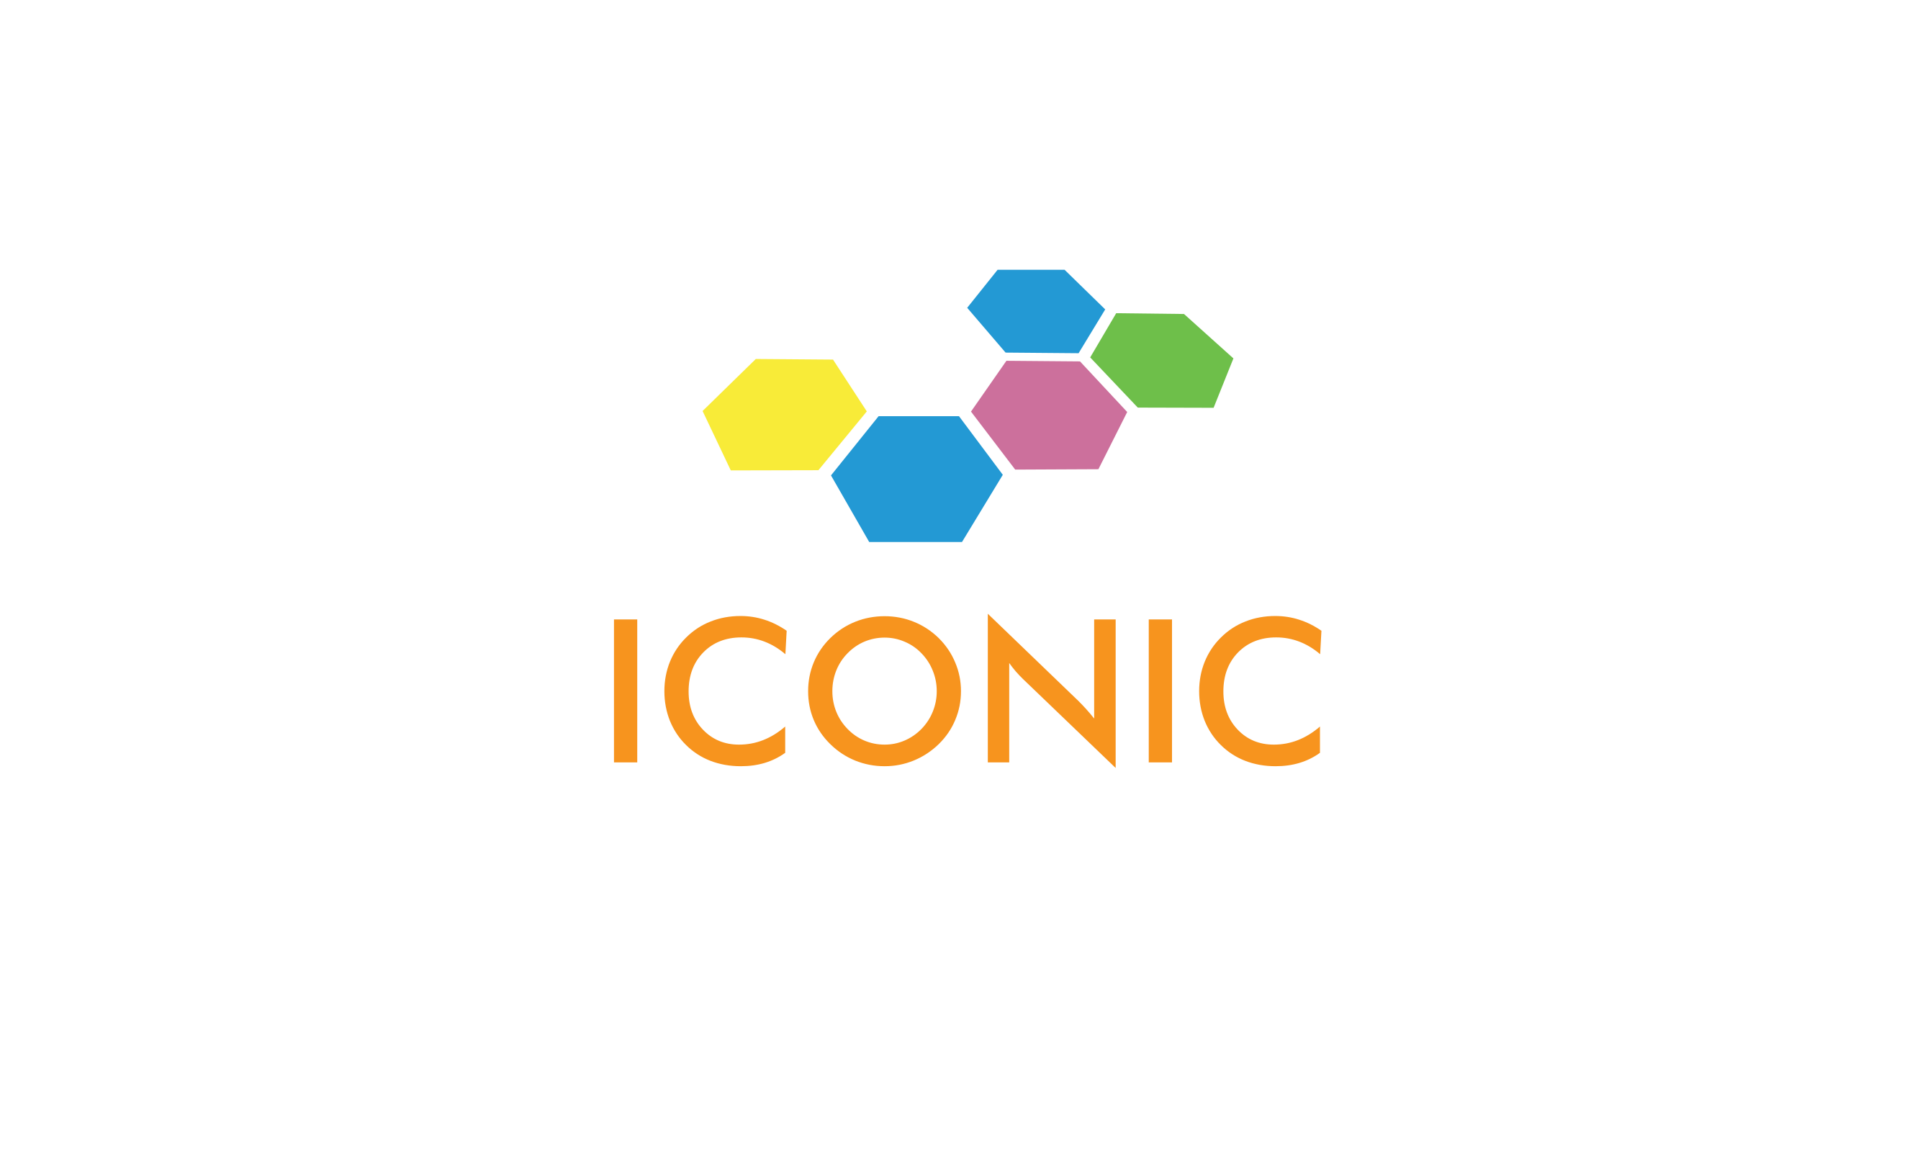 Iconic Media Group